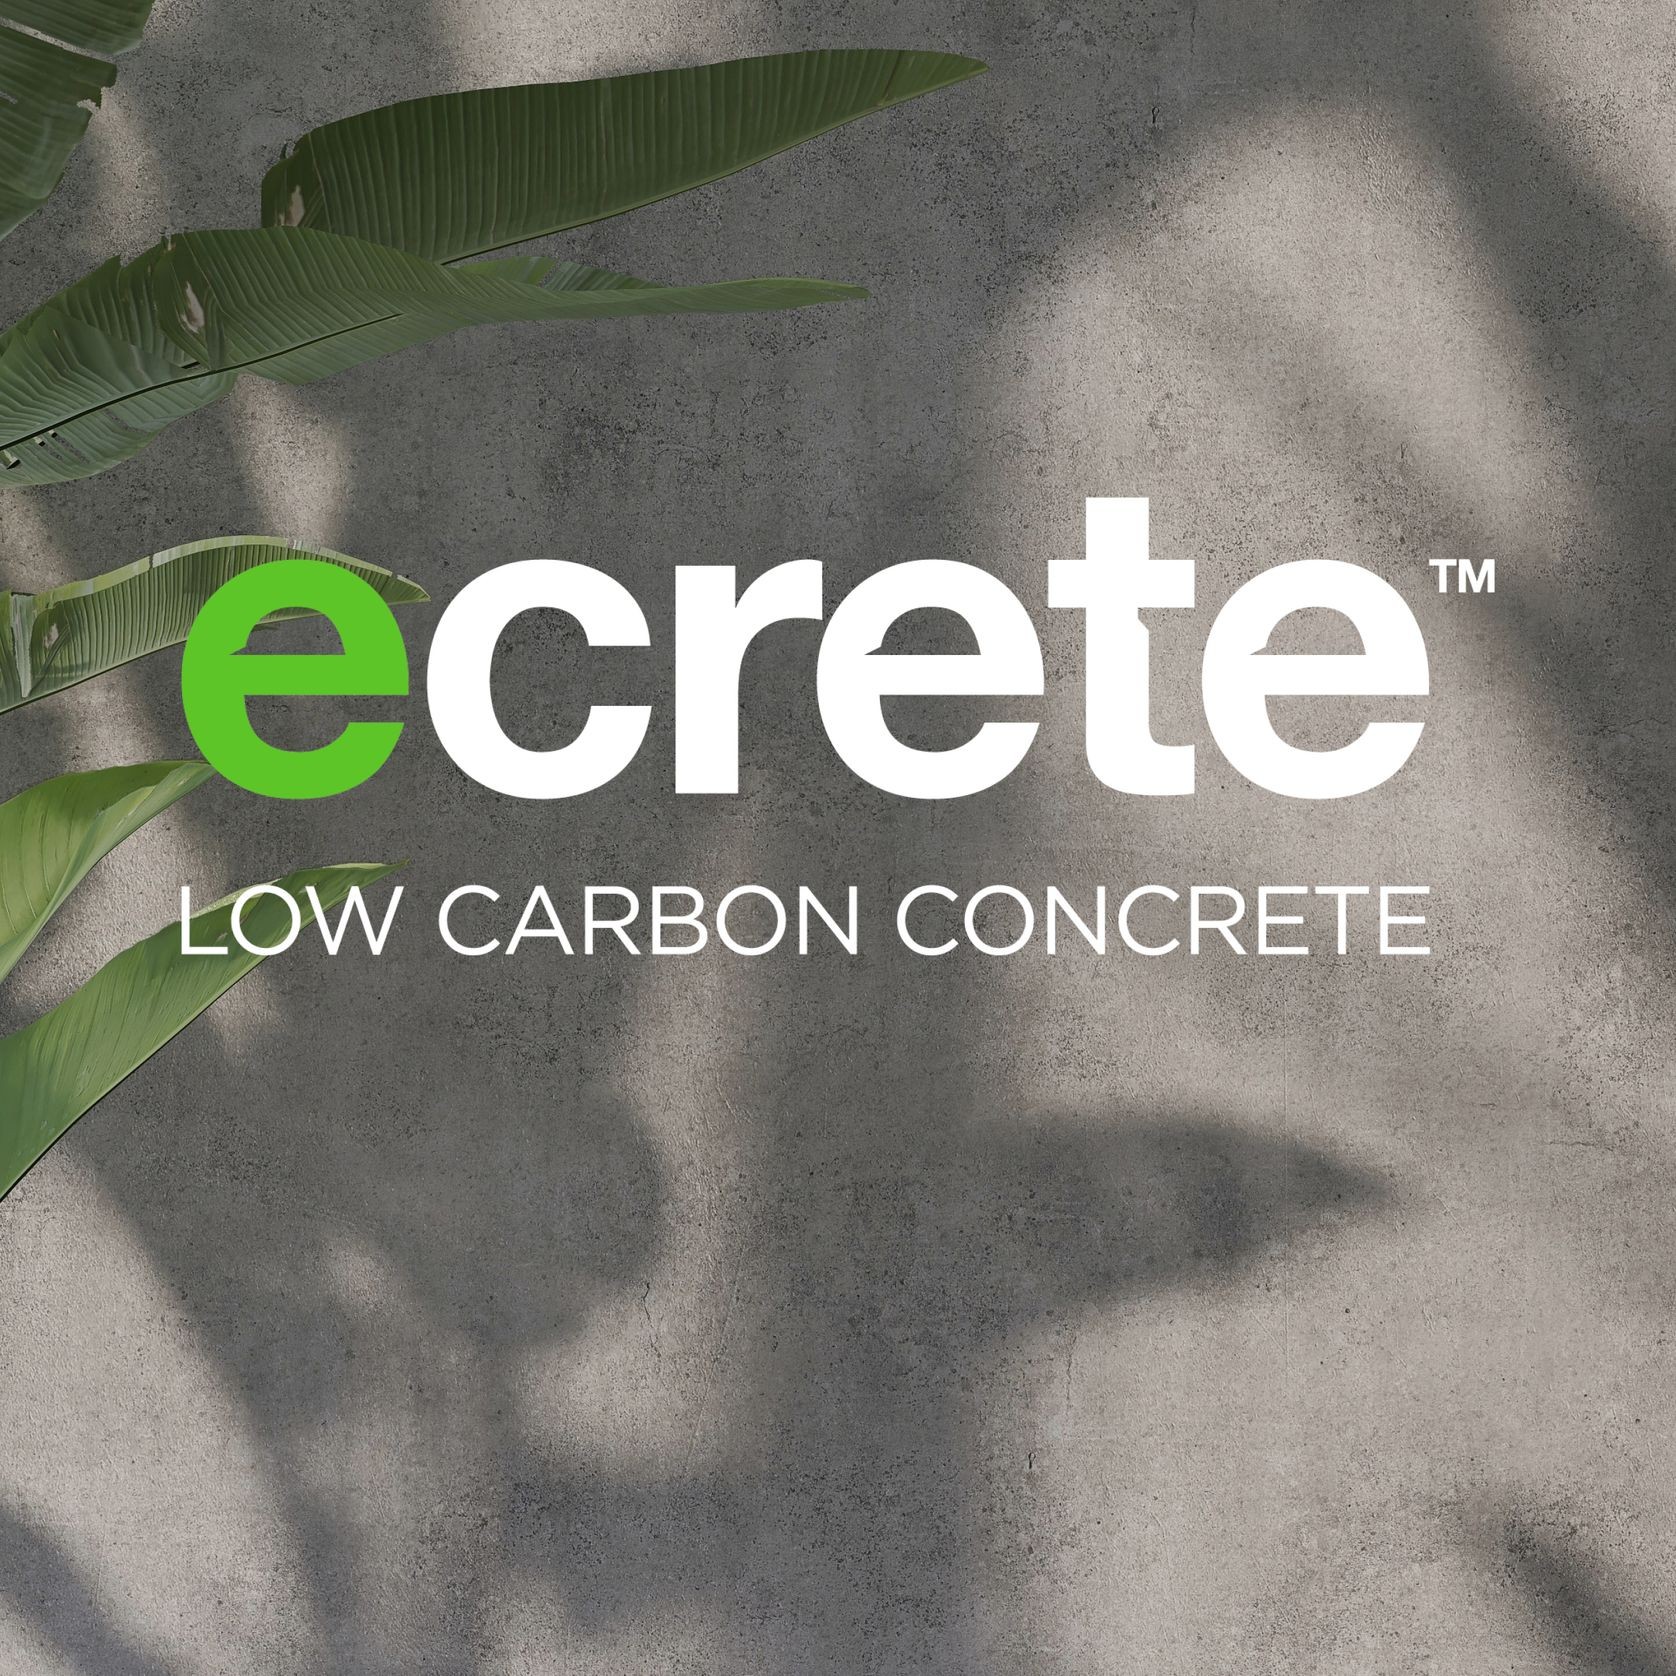 Ecrete | Low Carbon Concrete gallery detail image